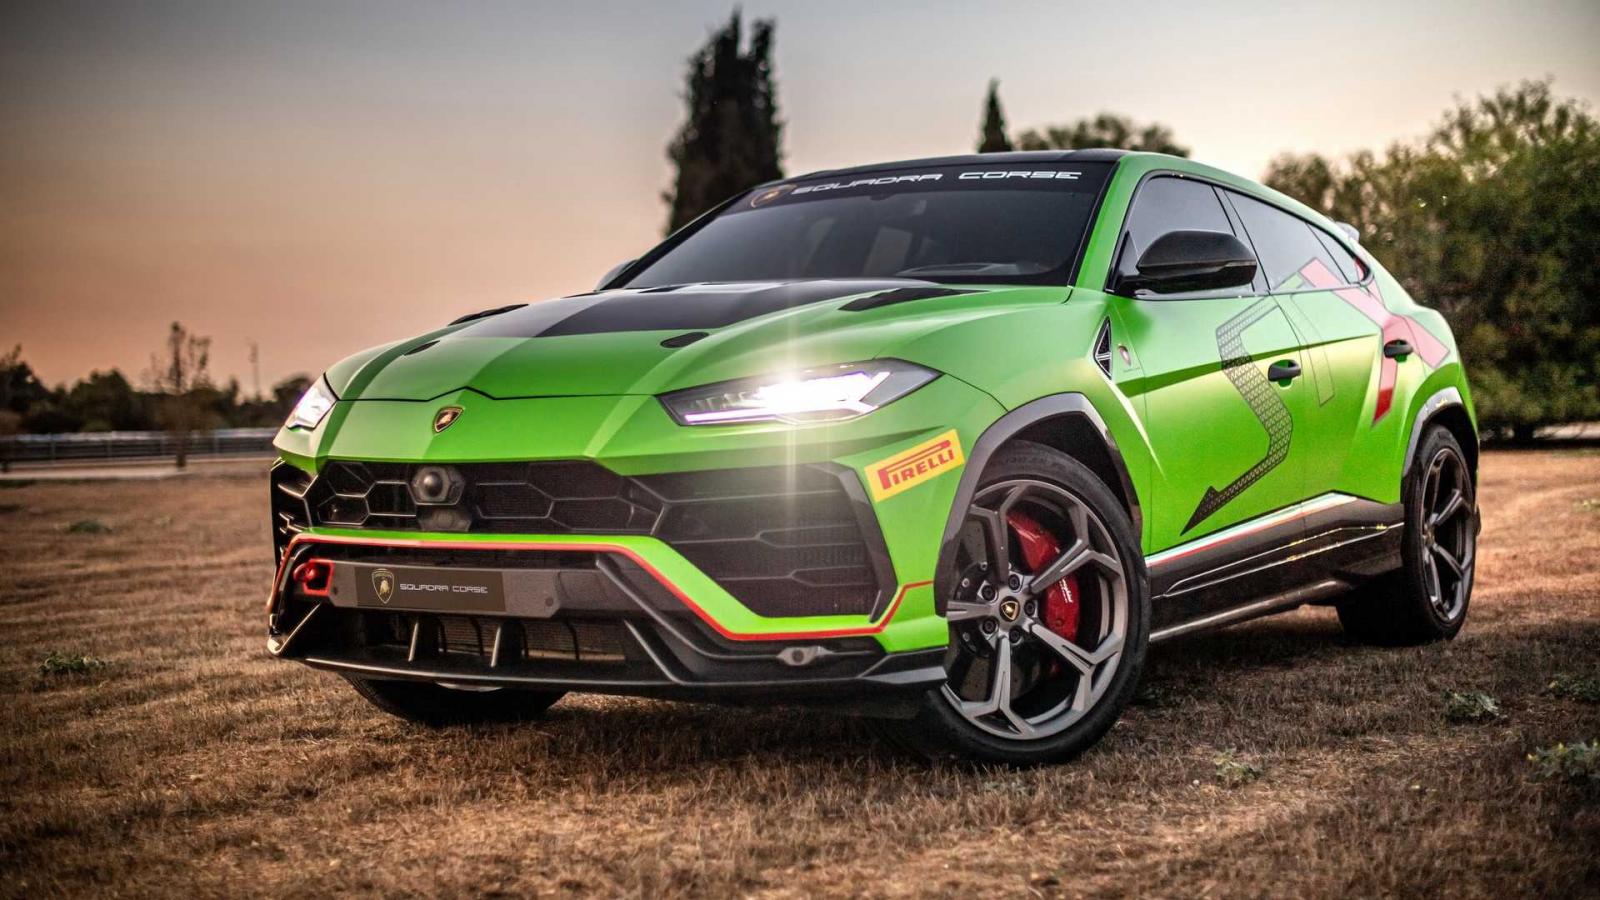 Lamborghini tiết lộ hình ảnh chiếc xe đua SUV đầu tiên trên thế giới